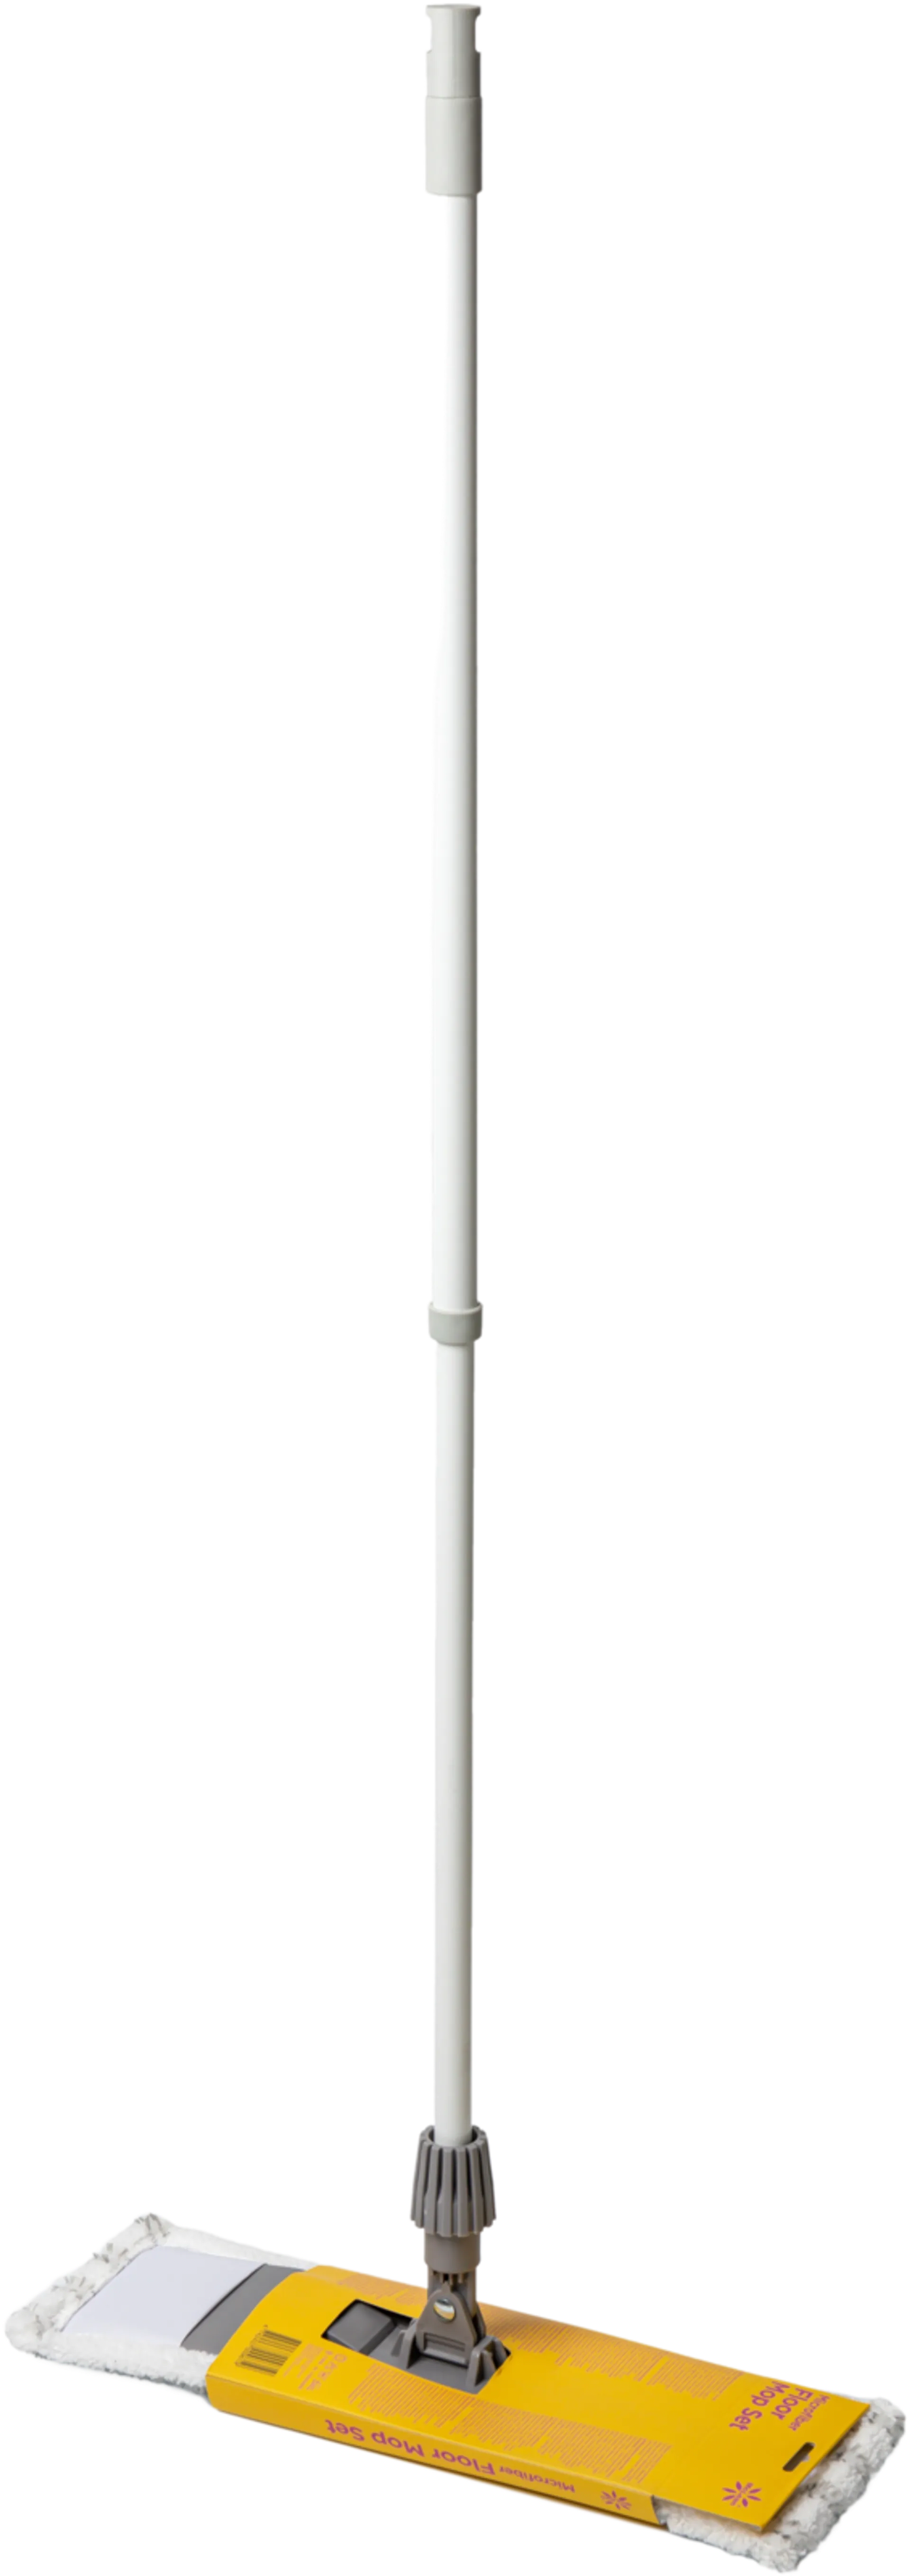 McLean-Home moppisetti 40cm, teleskooppivarrella